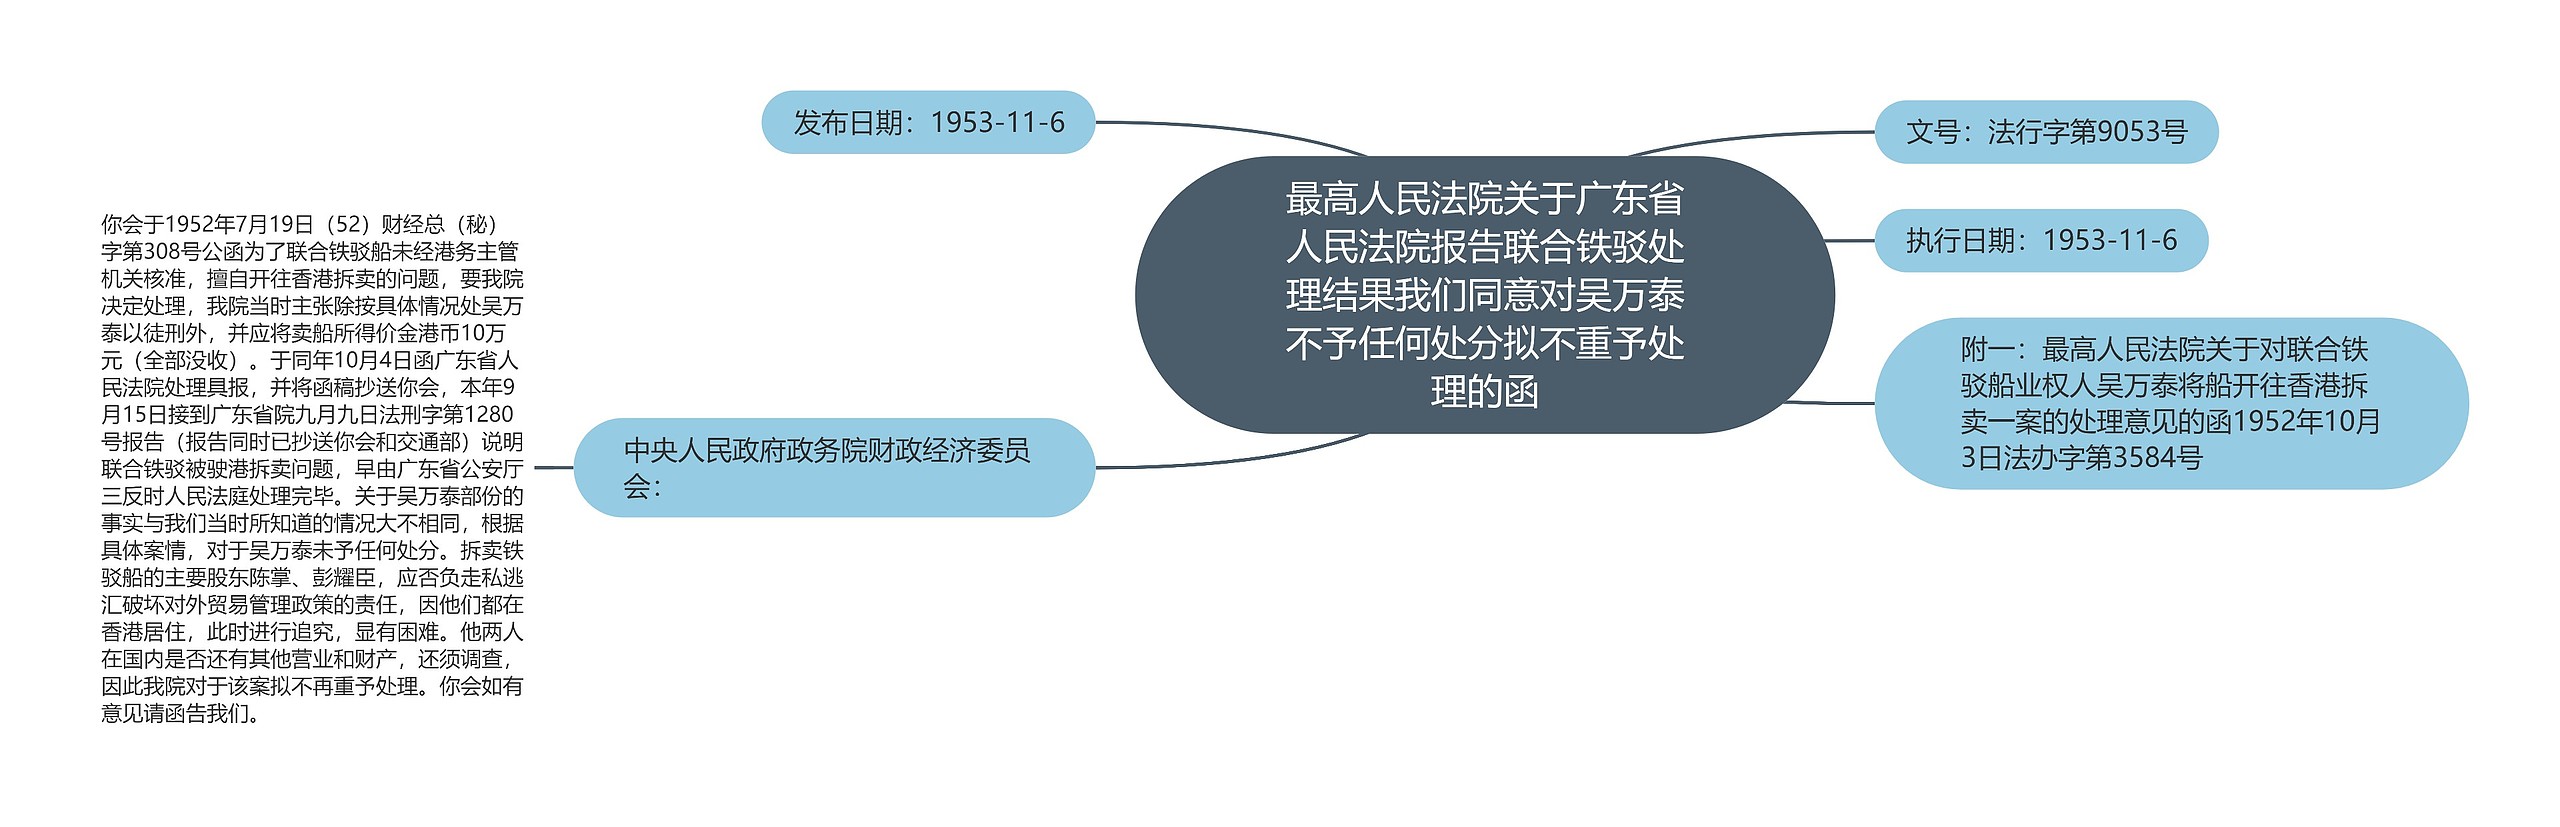 最高人民法院关于广东省人民法院报告联合铁驳处理结果我们同意对吴万泰不予任何处分拟不重予处理的函